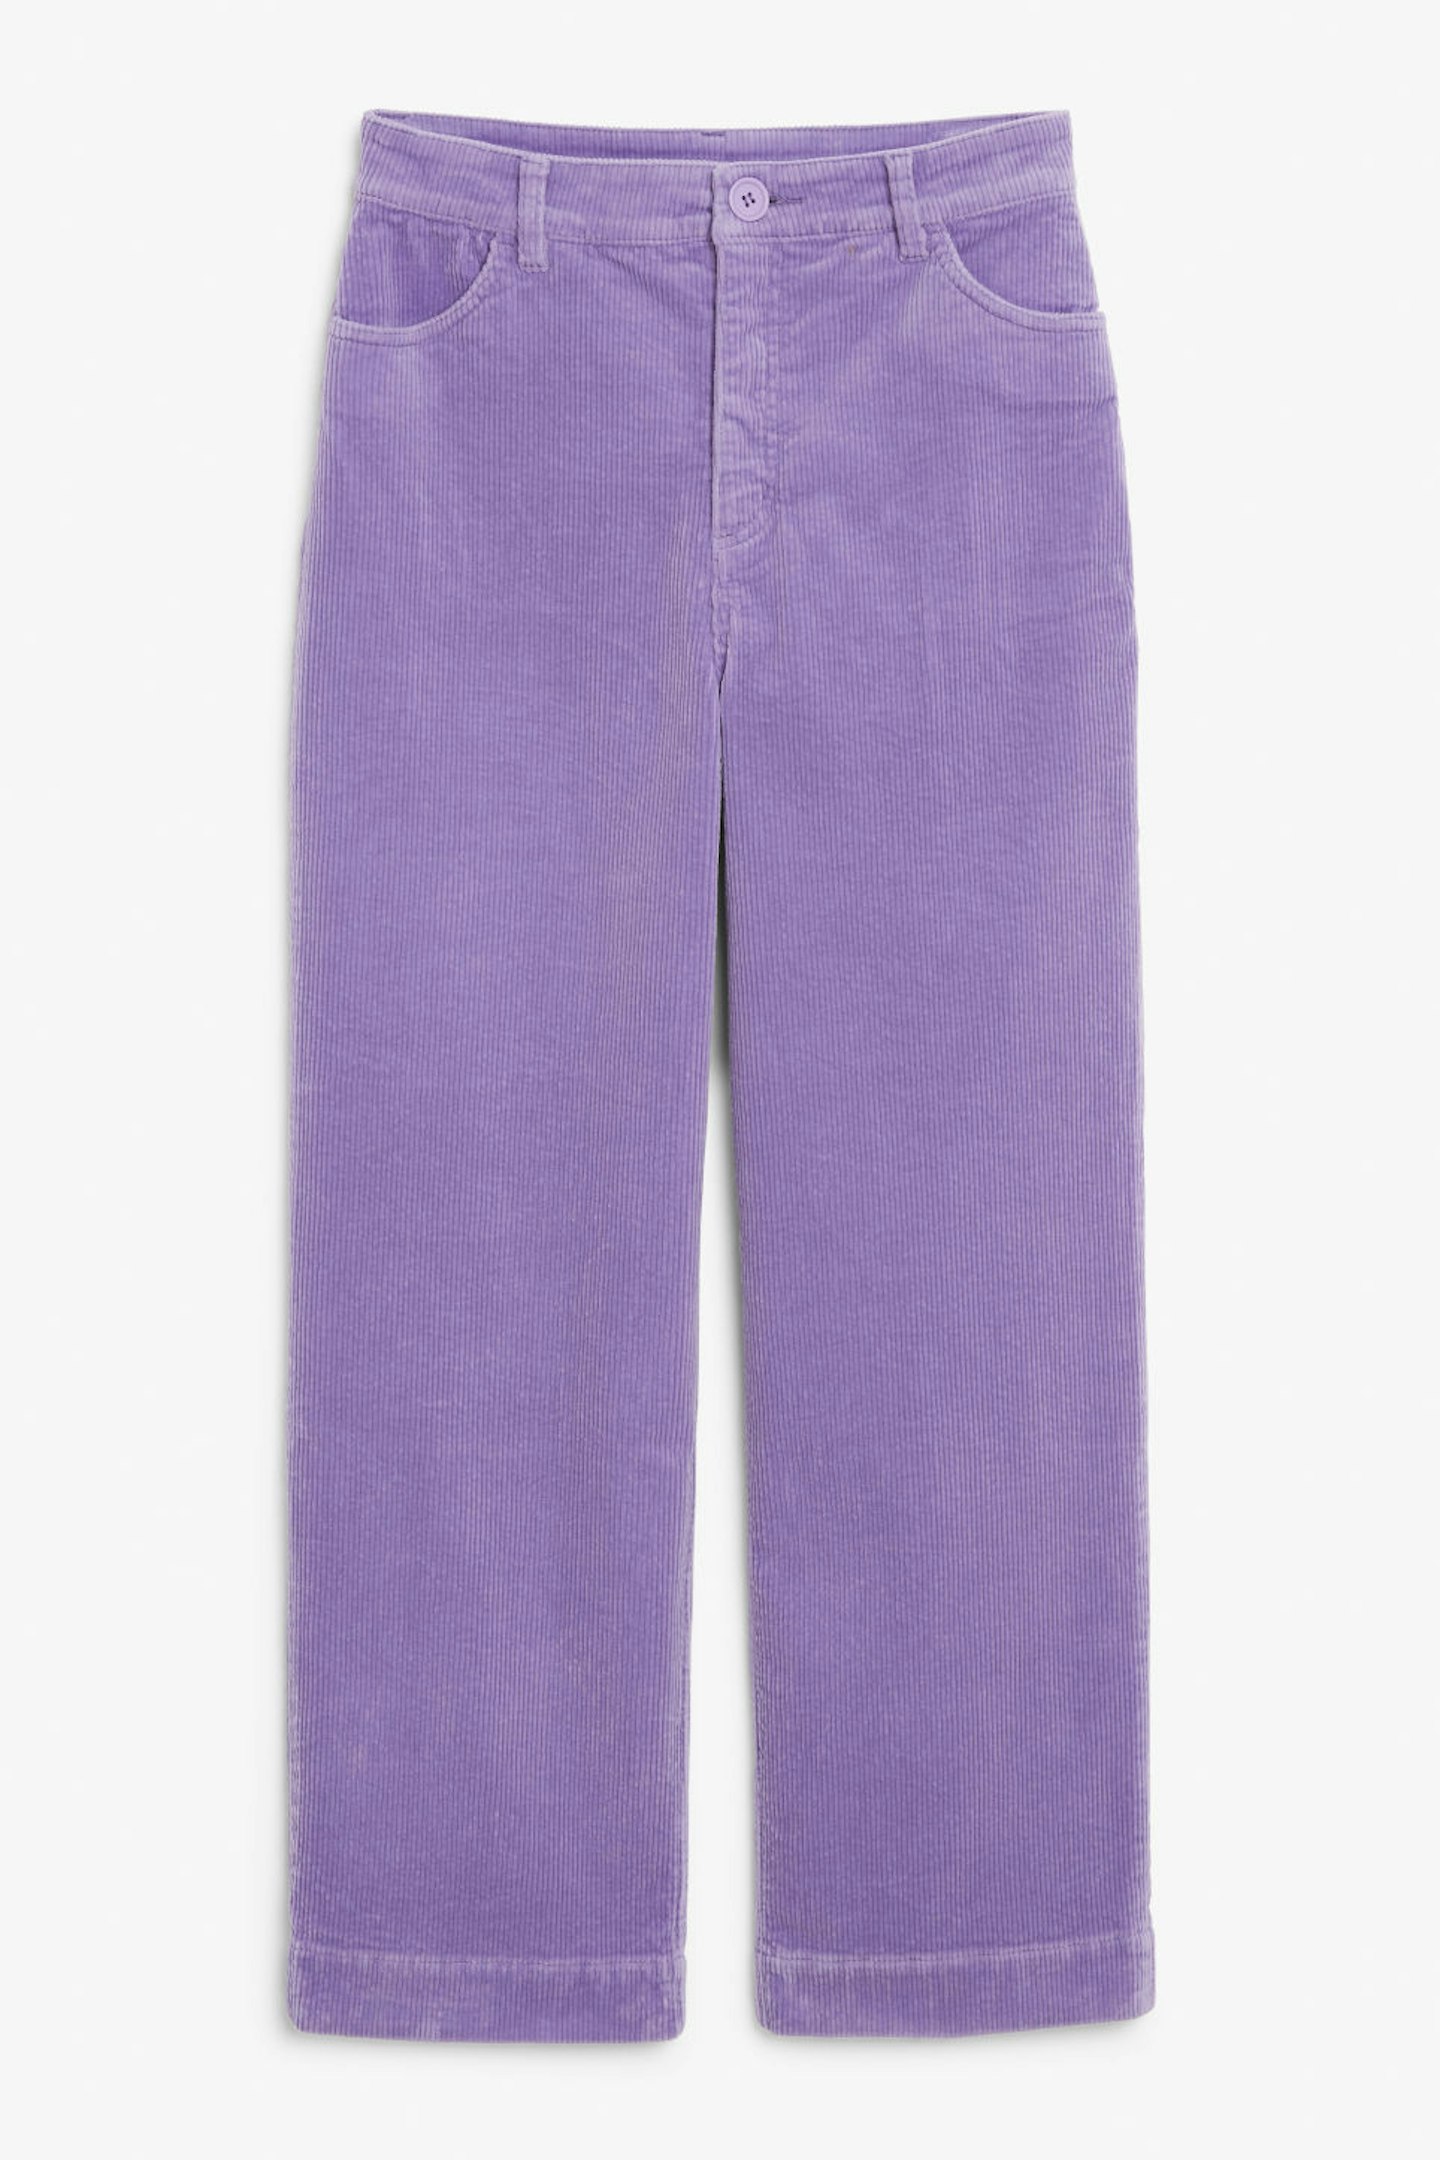 Monki, Wide Leg Corduroy Trousers, £35